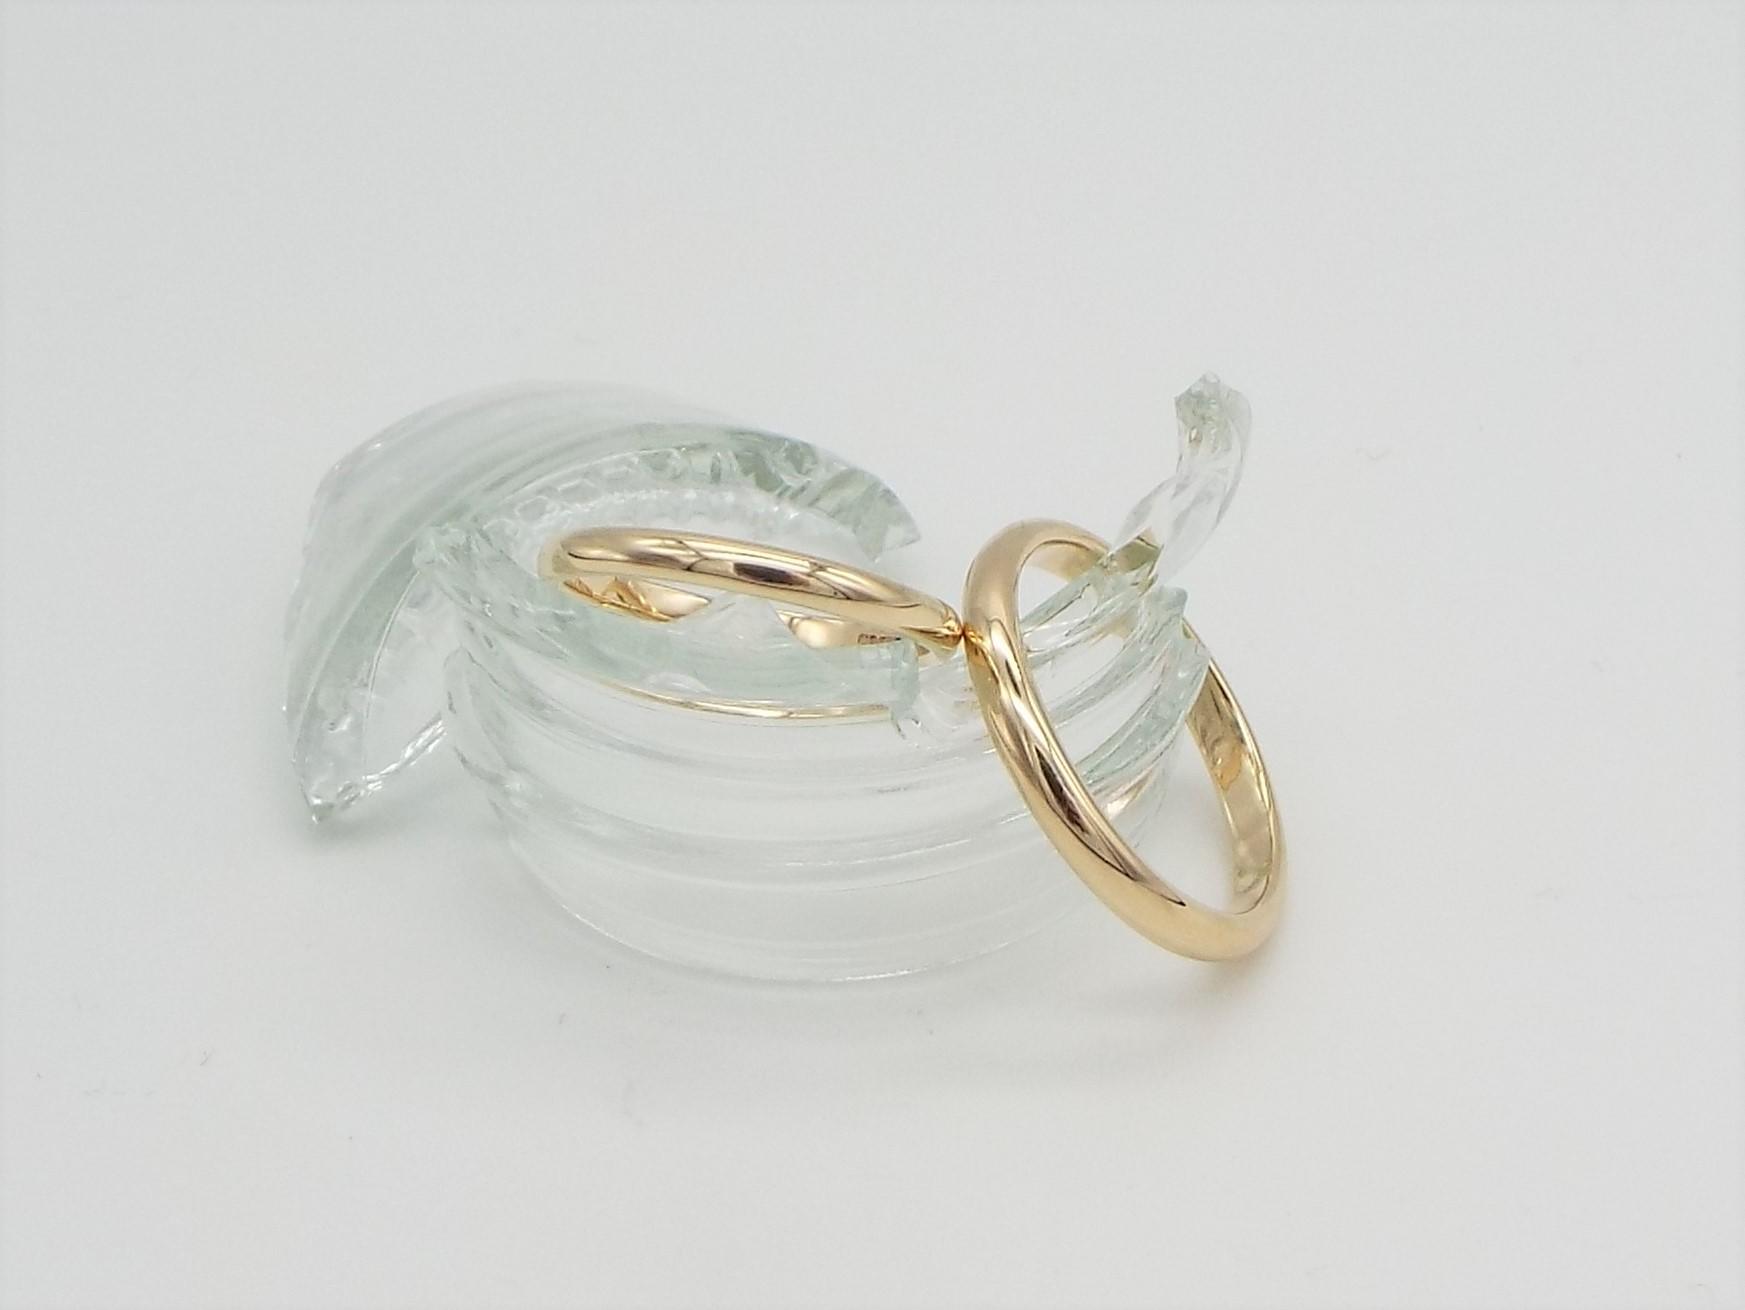 matching wedding ring set in yellow gold